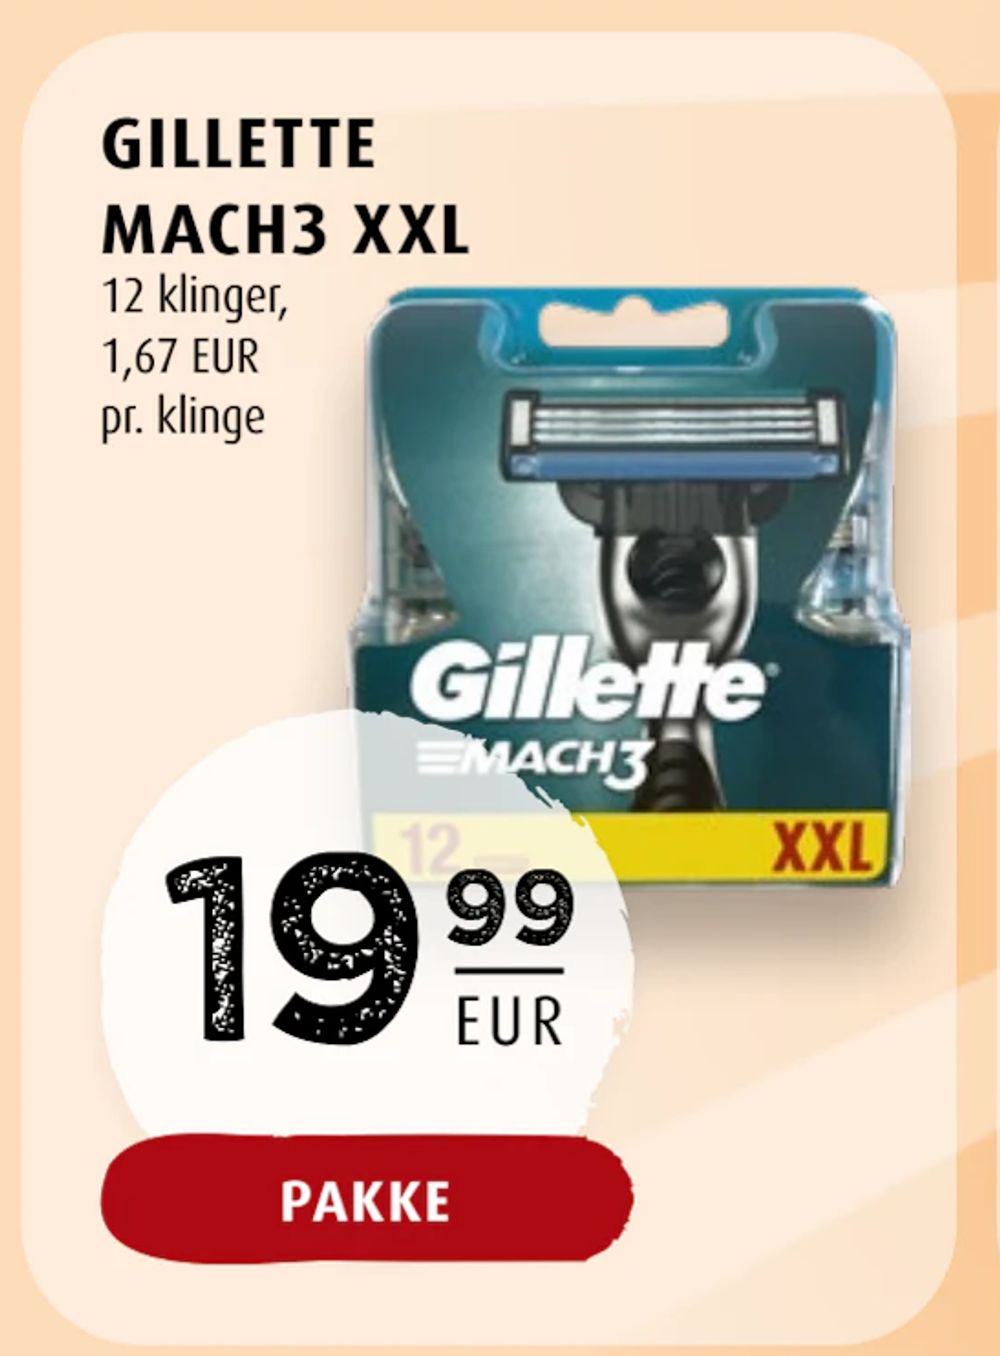 Tilbud på GILLETTE MACH3 XXL fra Scandinavian Park til 19,99 €